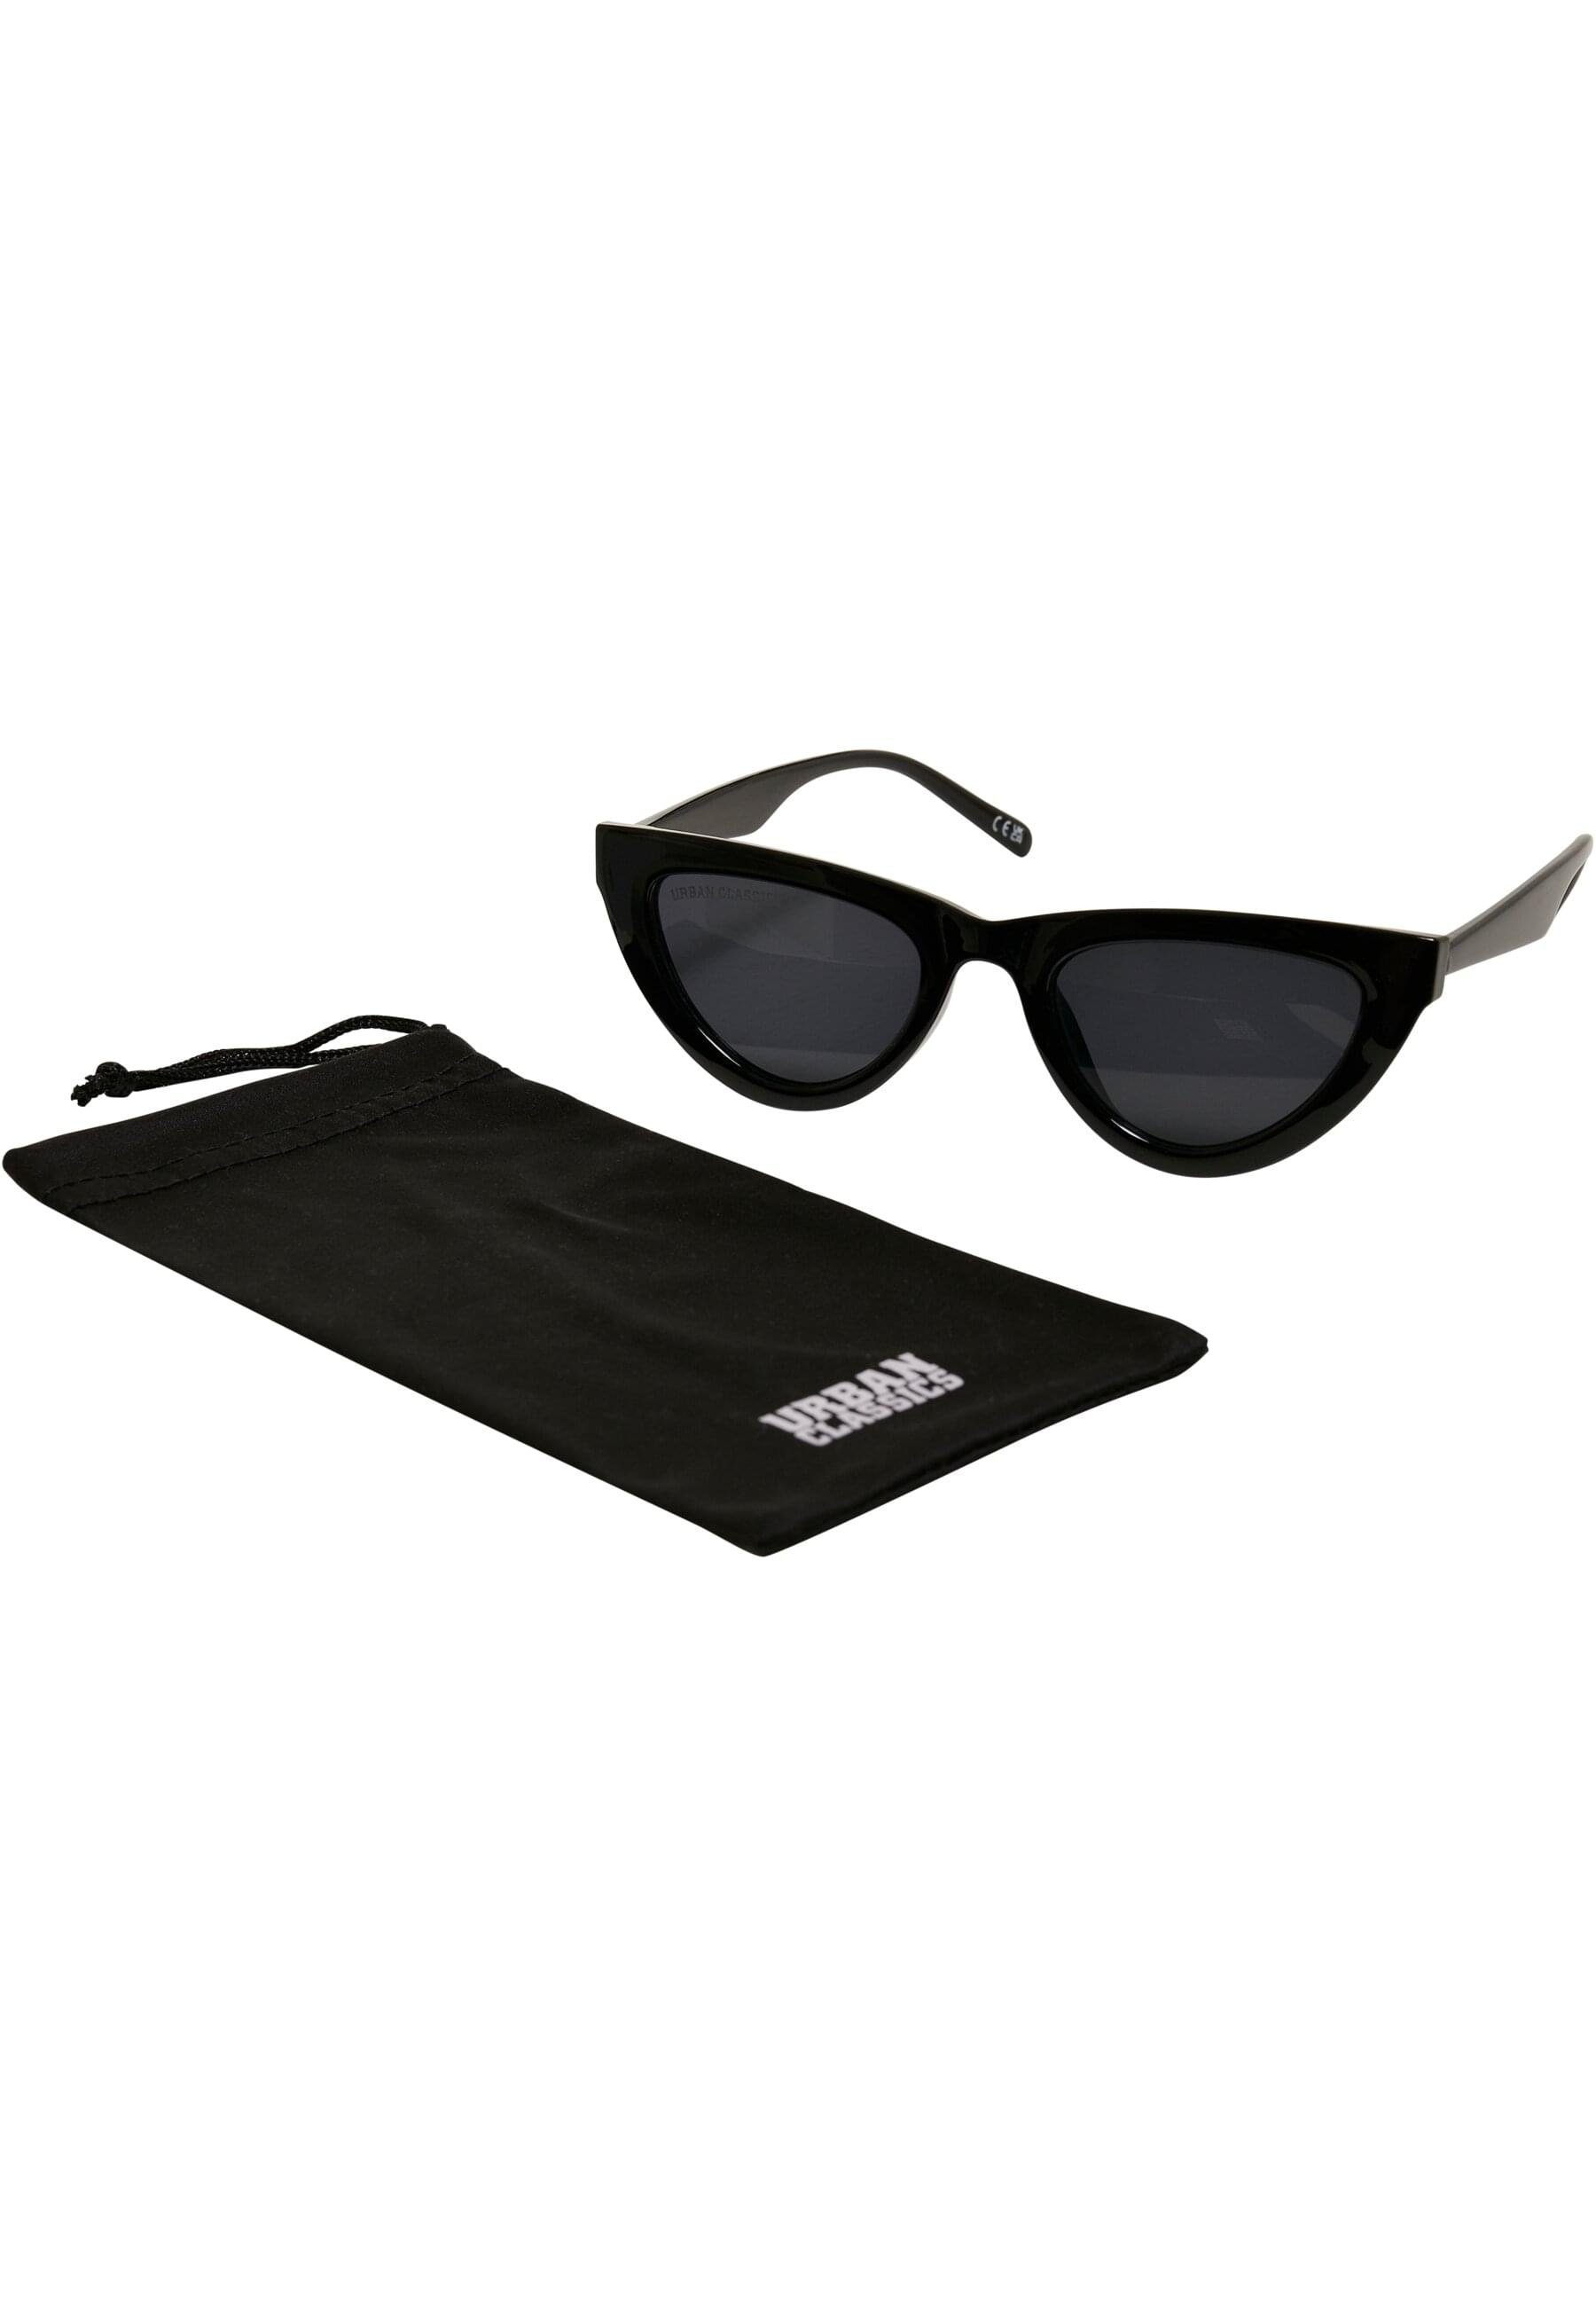 CLASSICS Sonnenbrille URBAN Unisex Sunglasses Arica